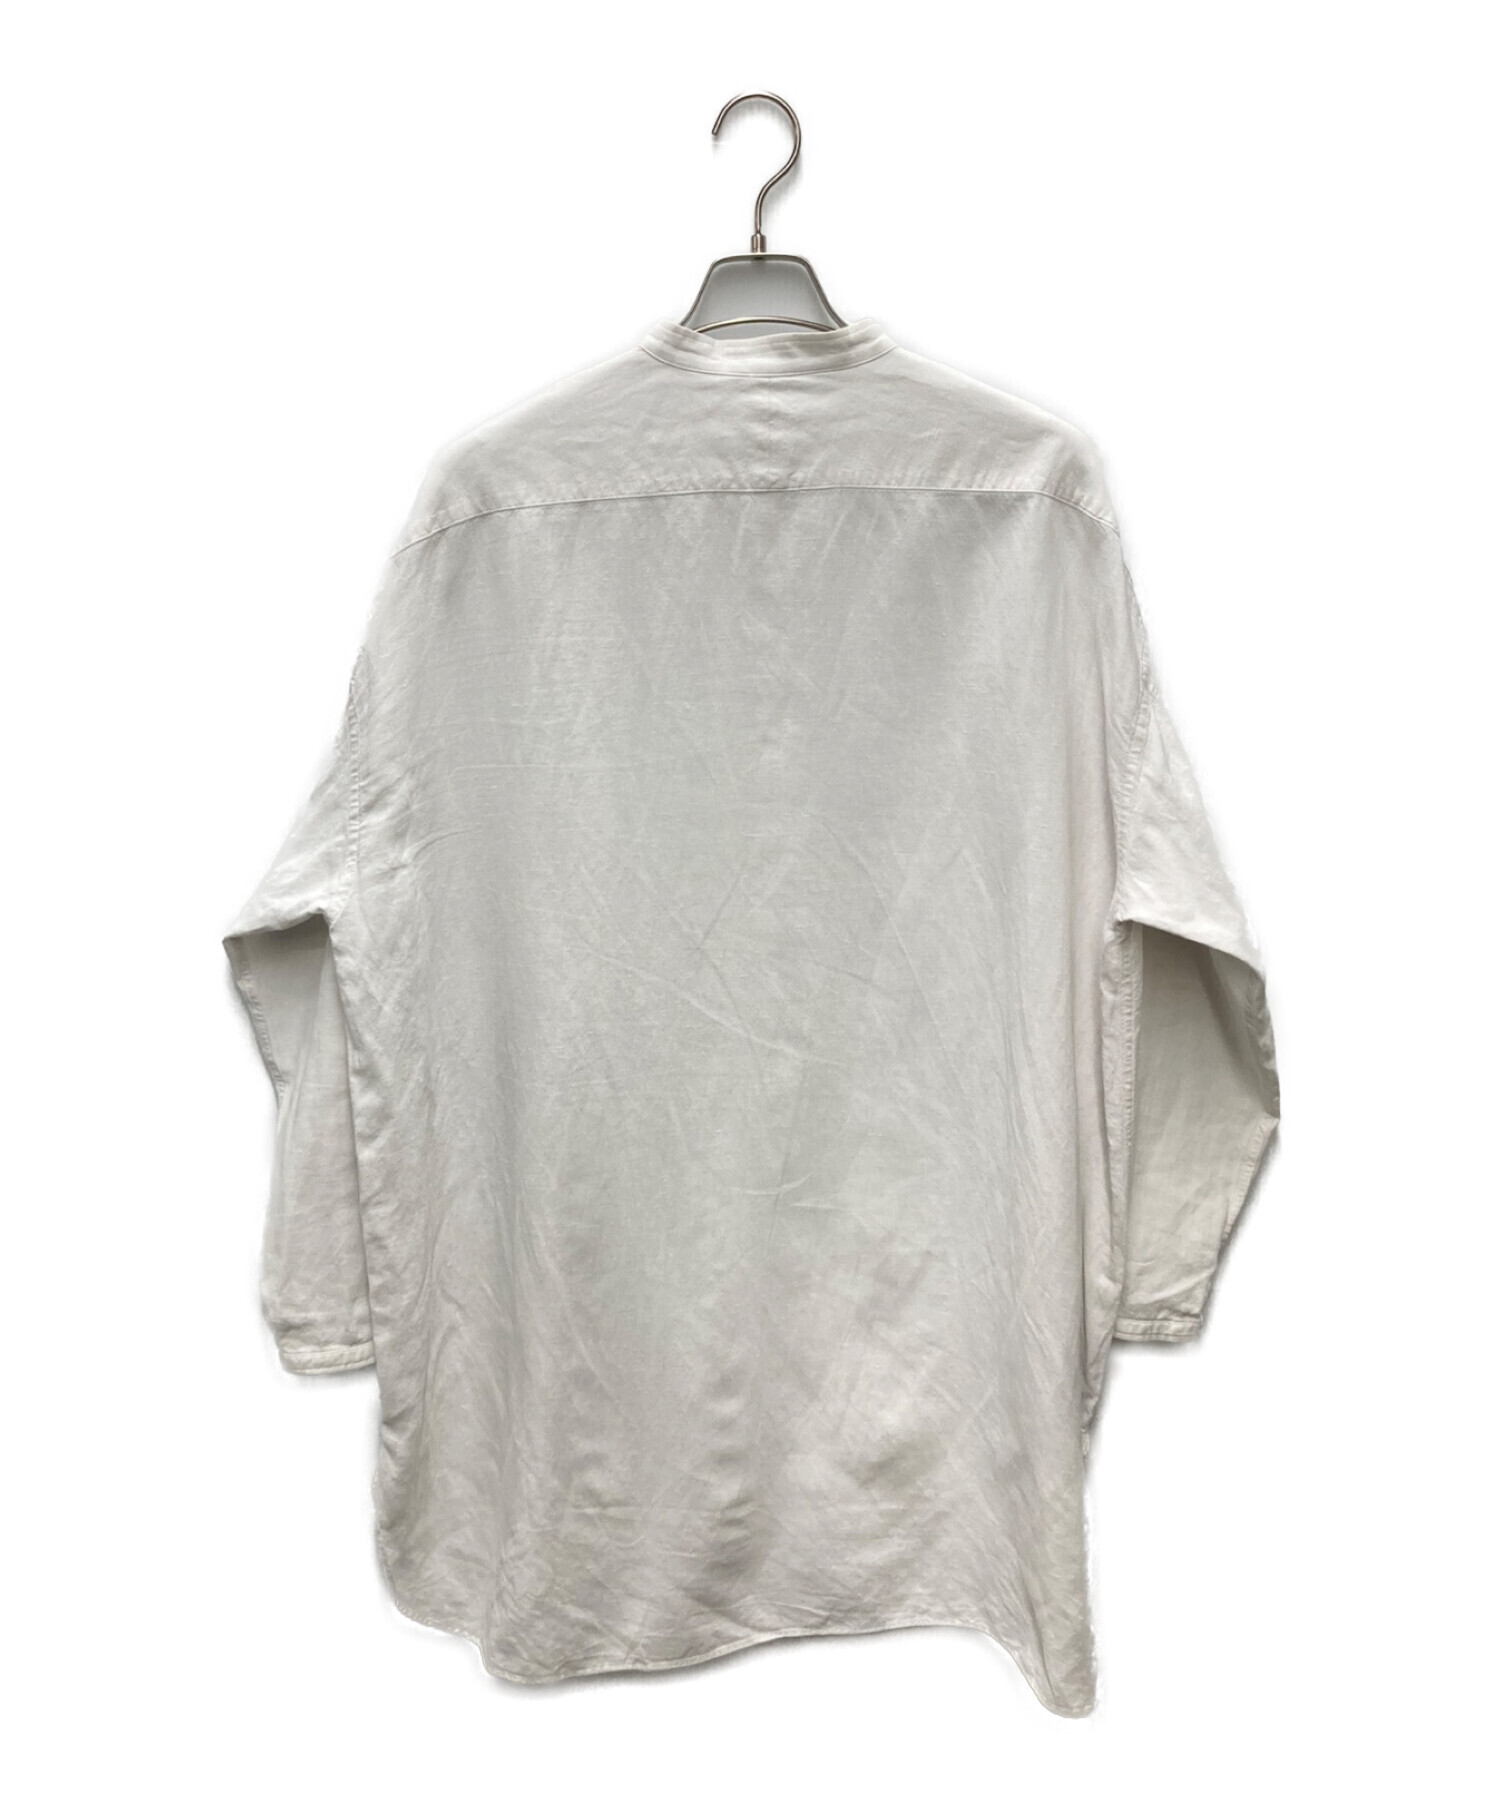 ARTS&SCIENCE (アーツアンドサイエンス) ミドルナイトシャツ/middle night shirt ホワイト サイズ:2